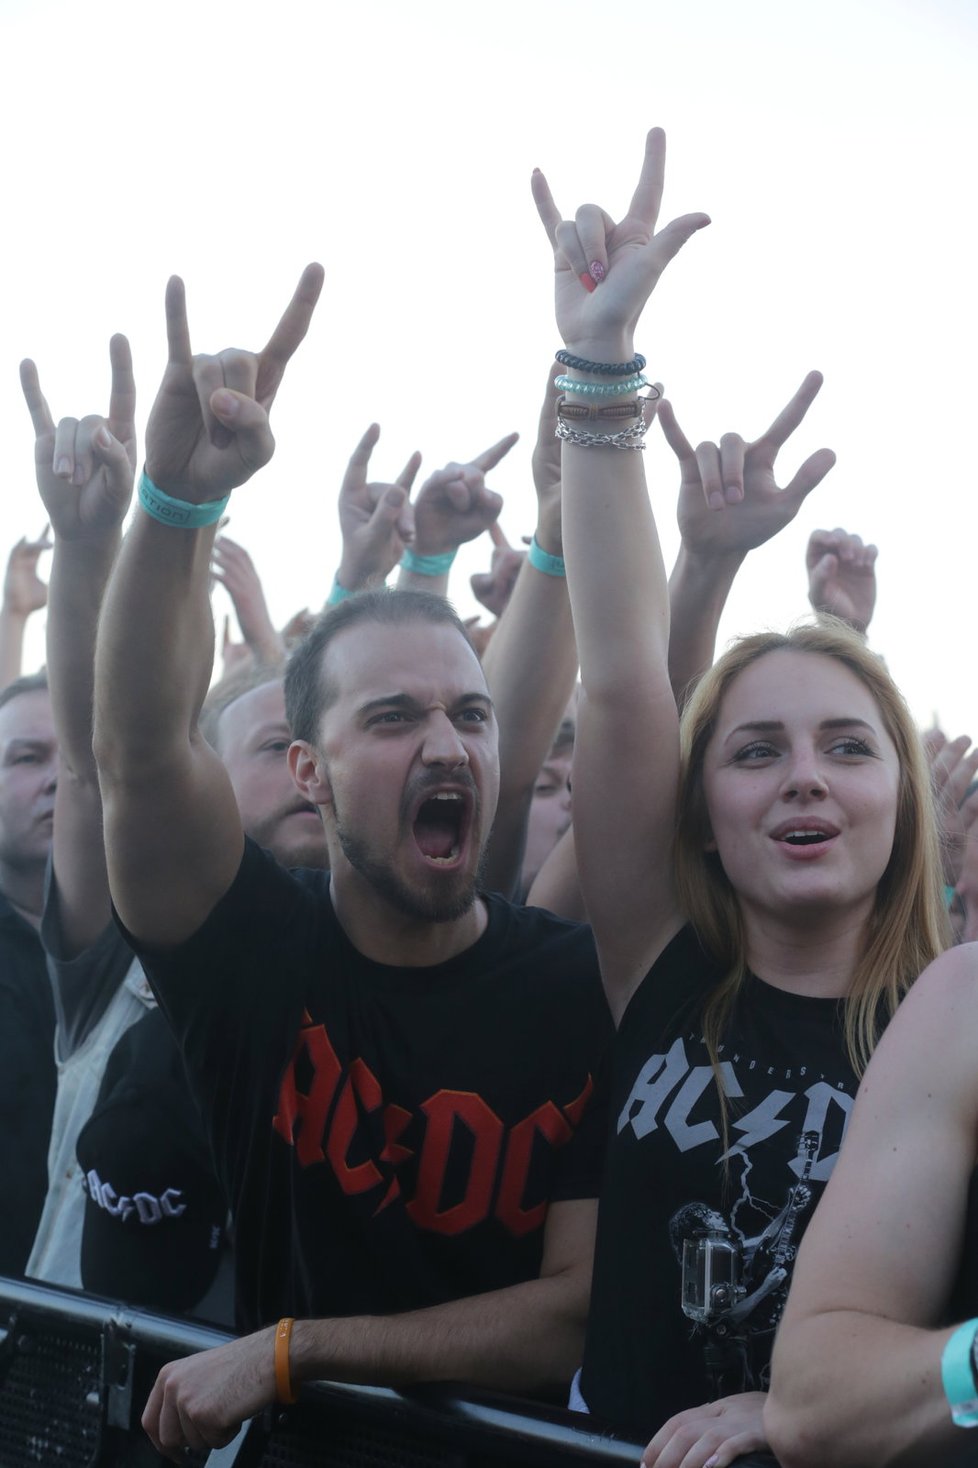 AC/DC předvedli v Praze svou show